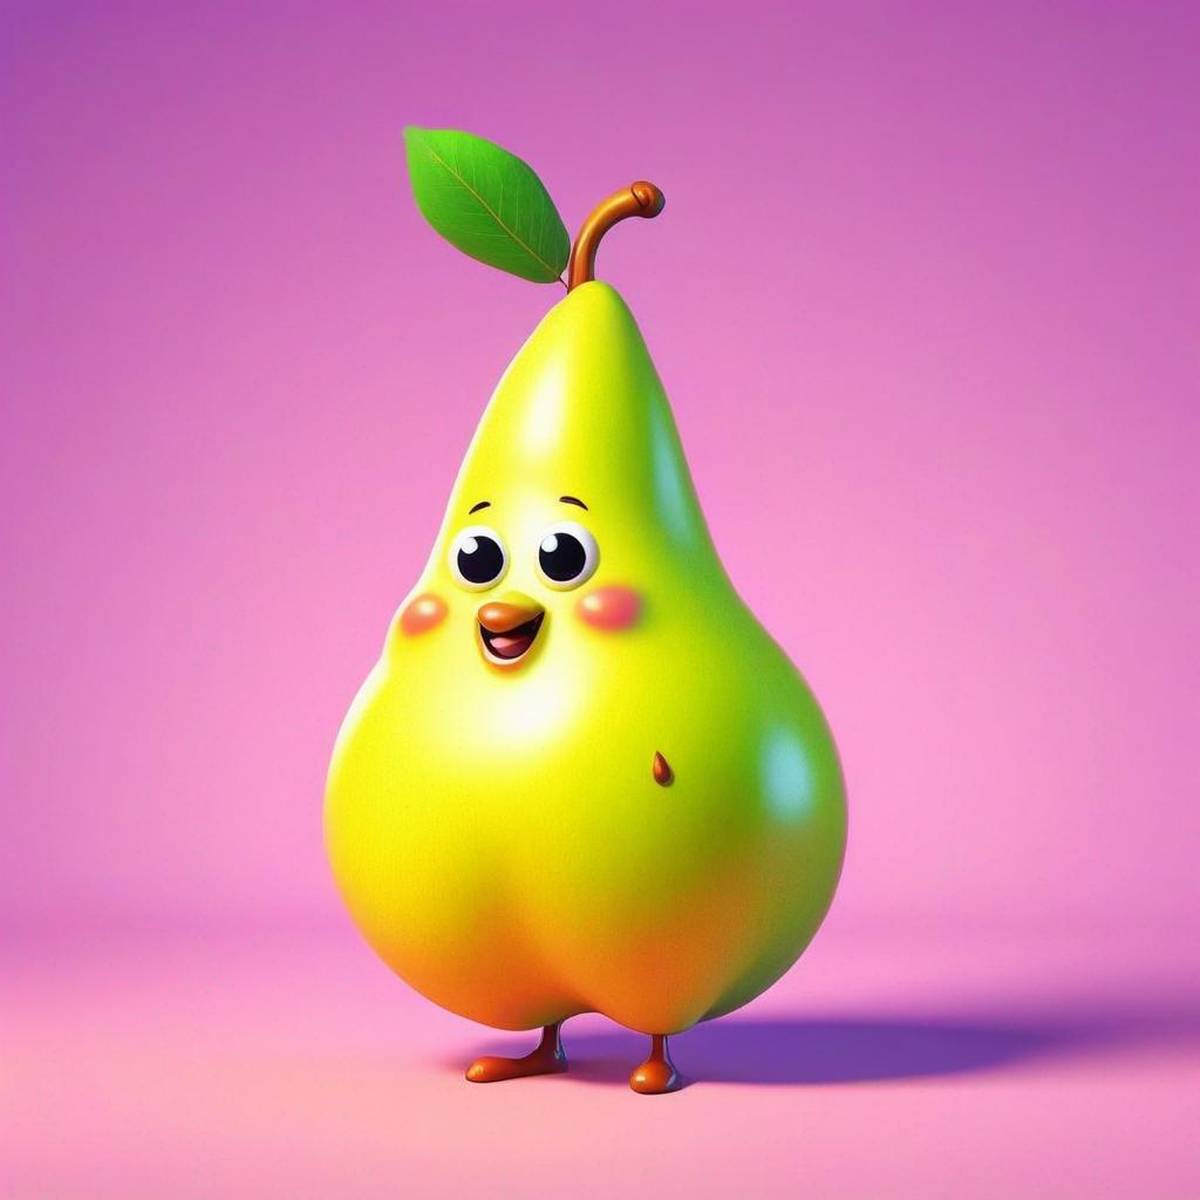 Pear puns